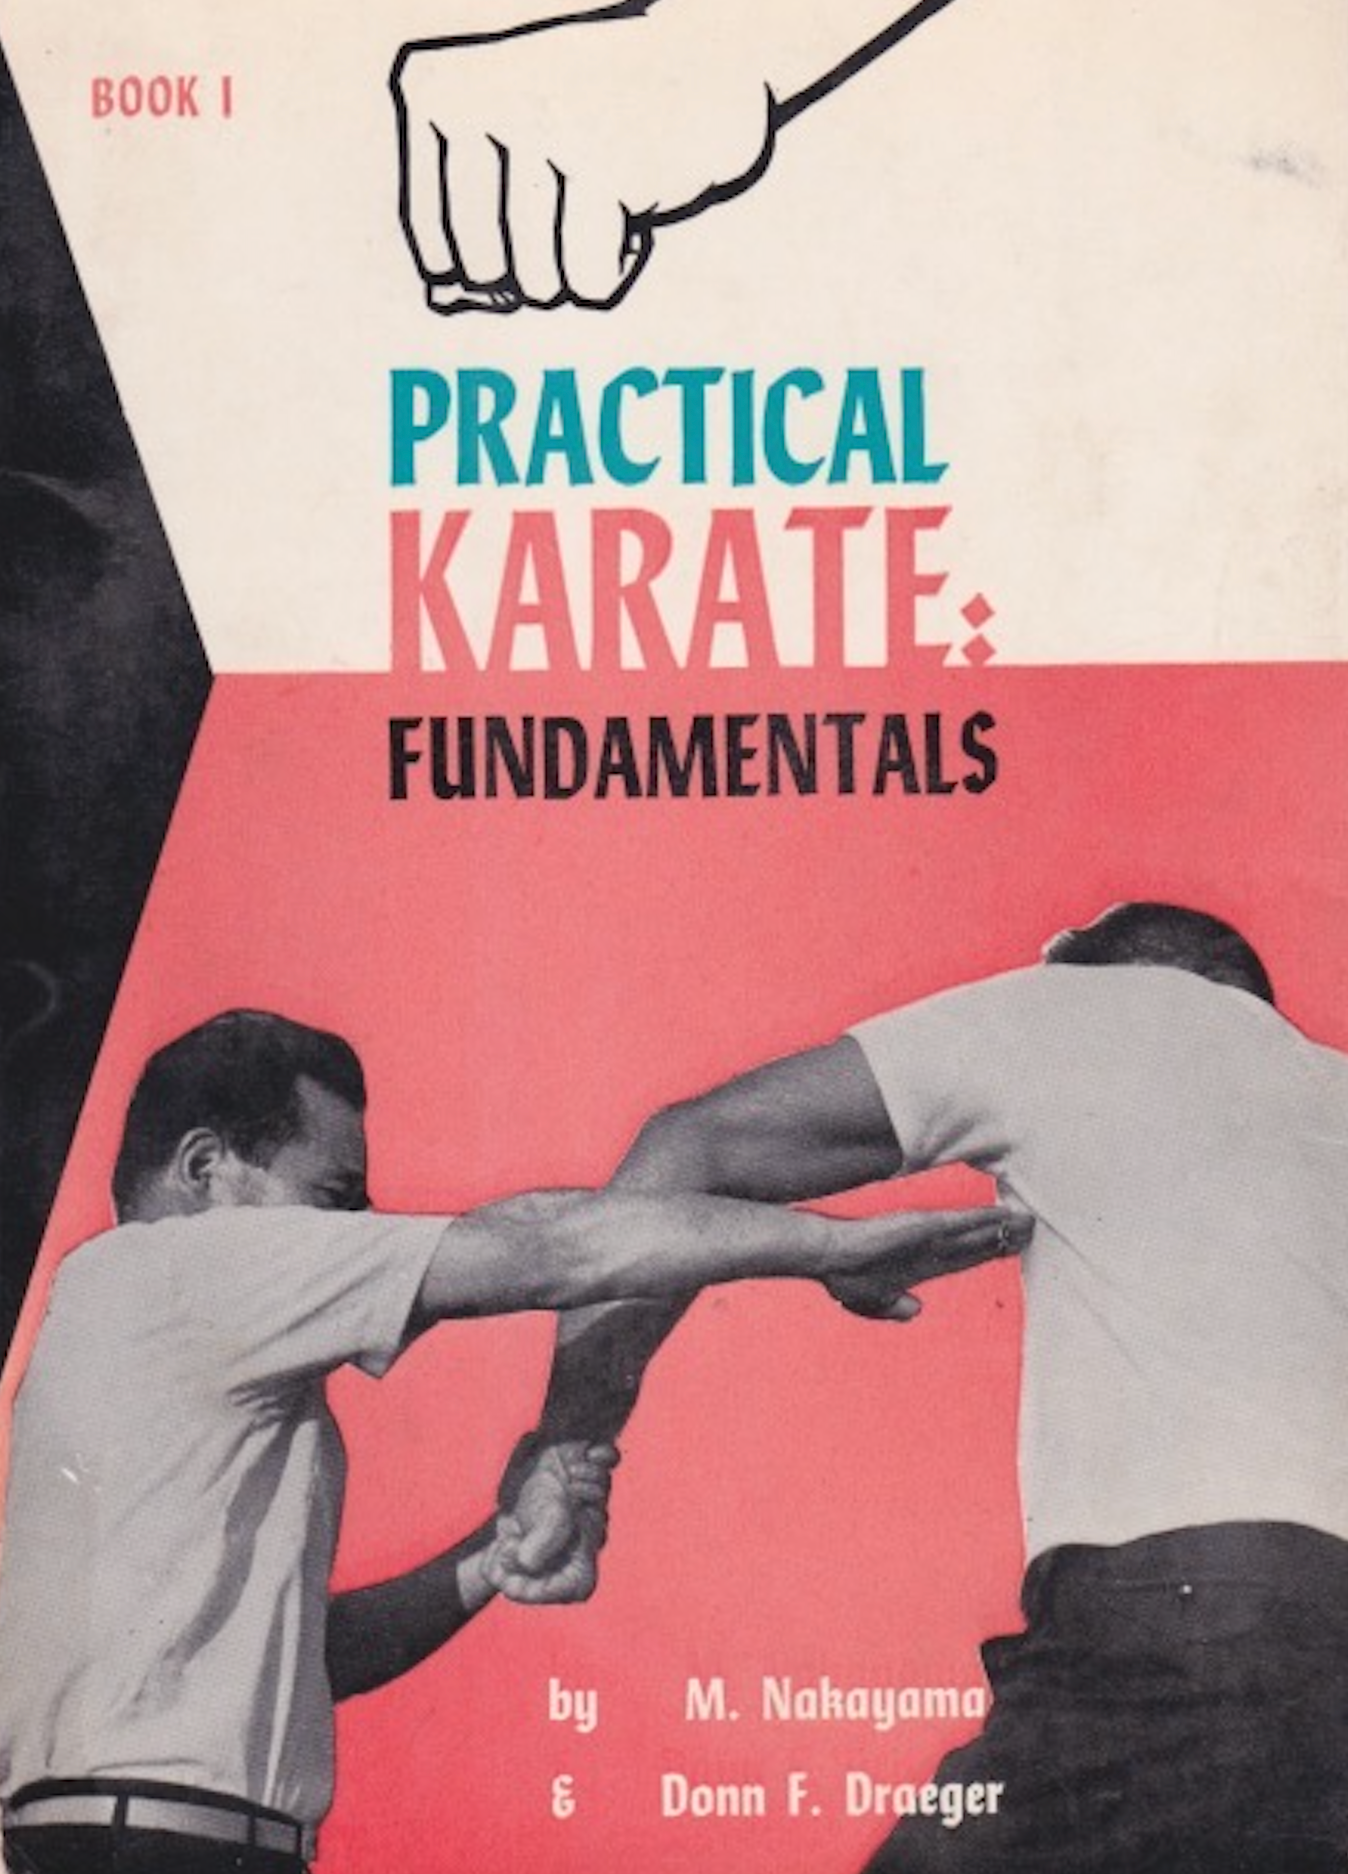 Practical Karate Book 1: Fundamentals by Masatoshi Nakayama & Donn Draeger (Preowned)